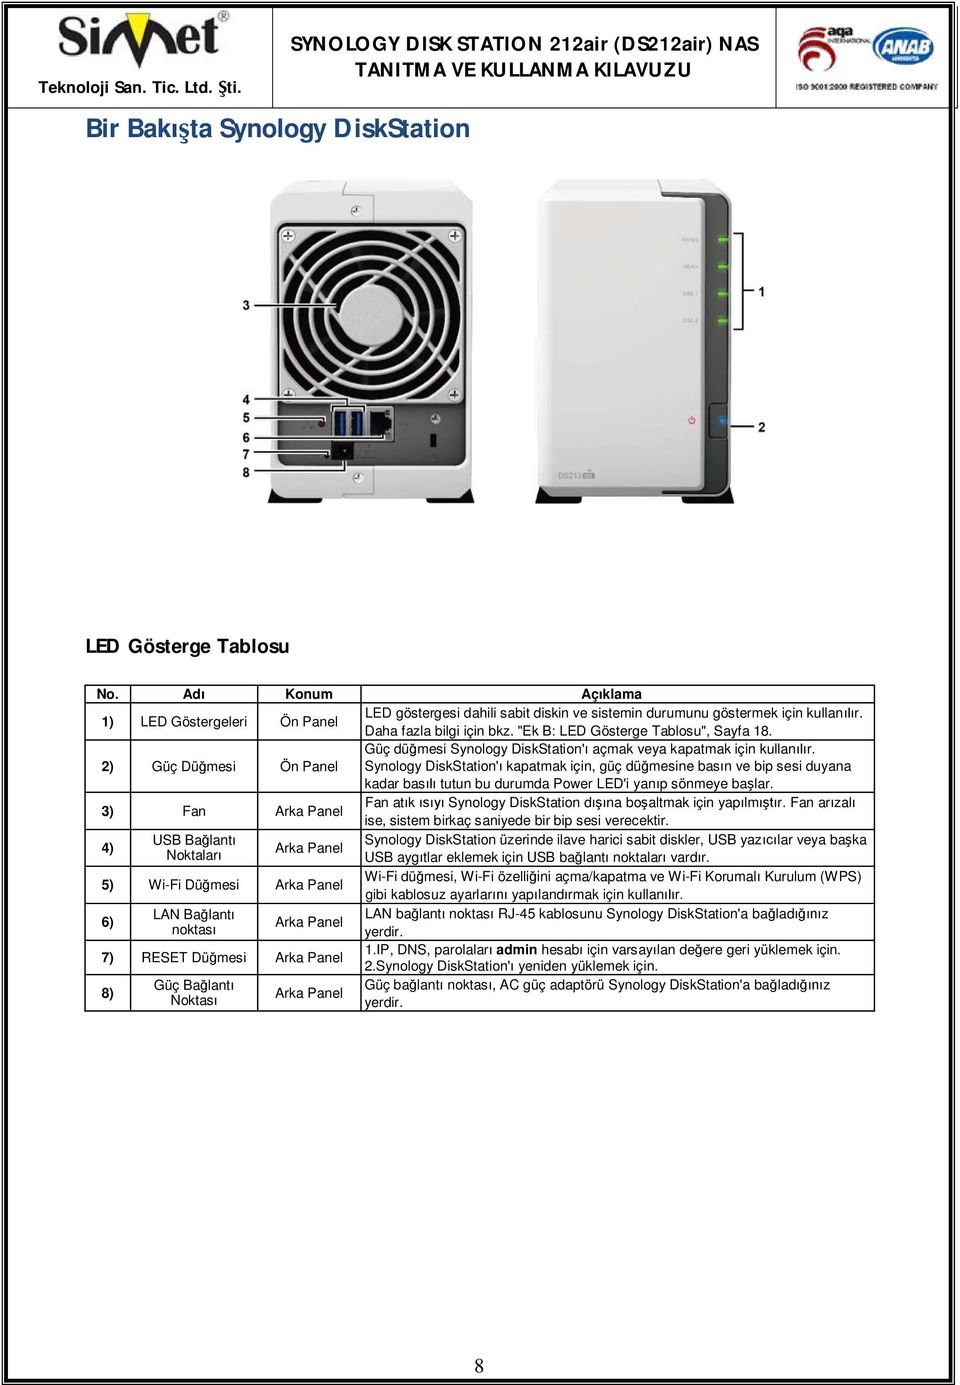 2) Güç Dümesi Ön Panel Güç dümesi Synology DiskStation' açmak veya kapatmak için kullanr.